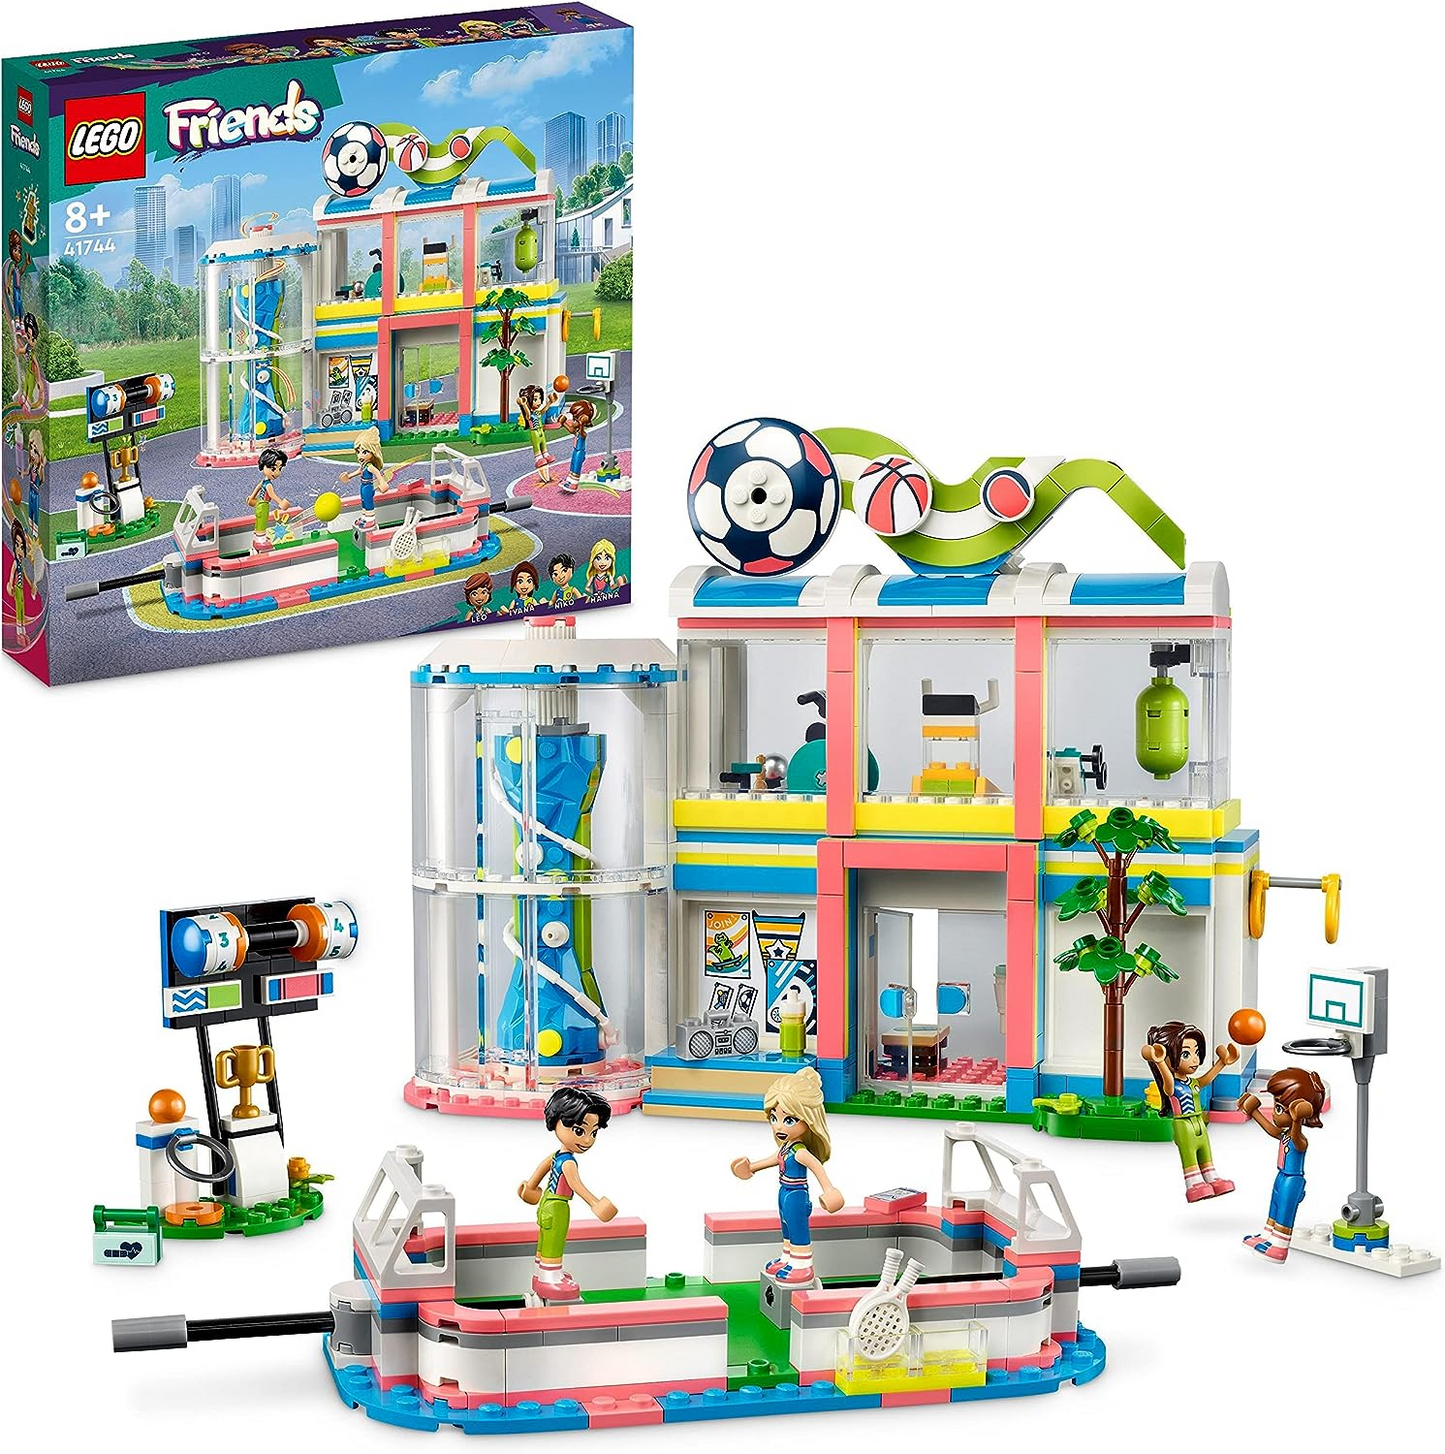 LEGO 41744 Friends Sports Center Building Toy com jogos de futebol, ba